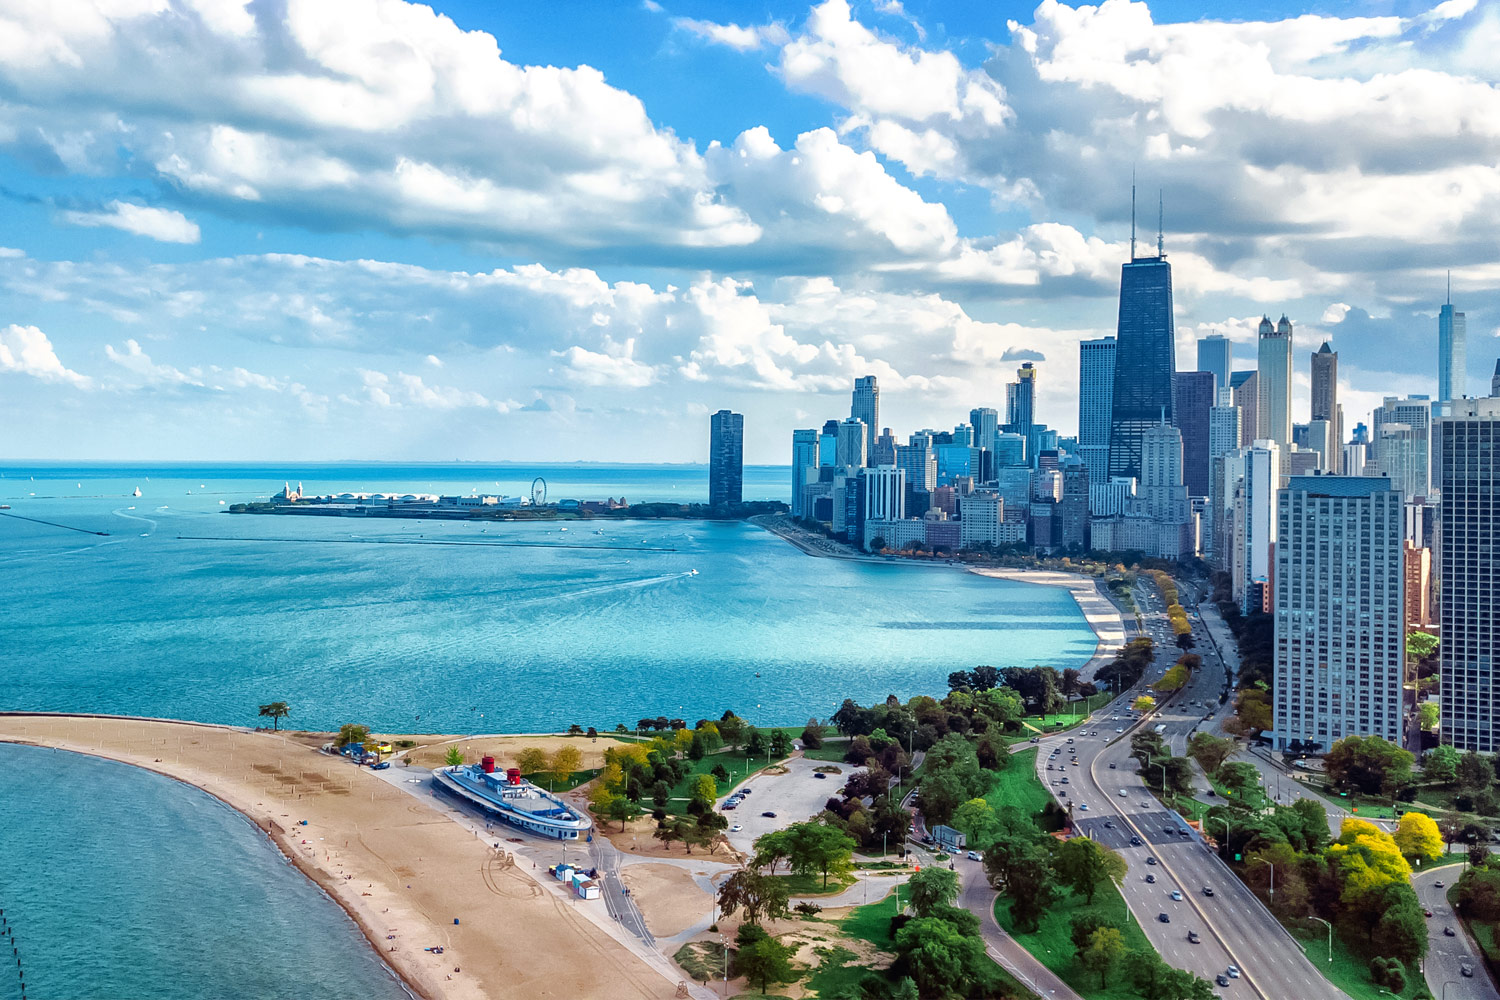 Lake Michigan bij Chicago, gratis naar het strand!